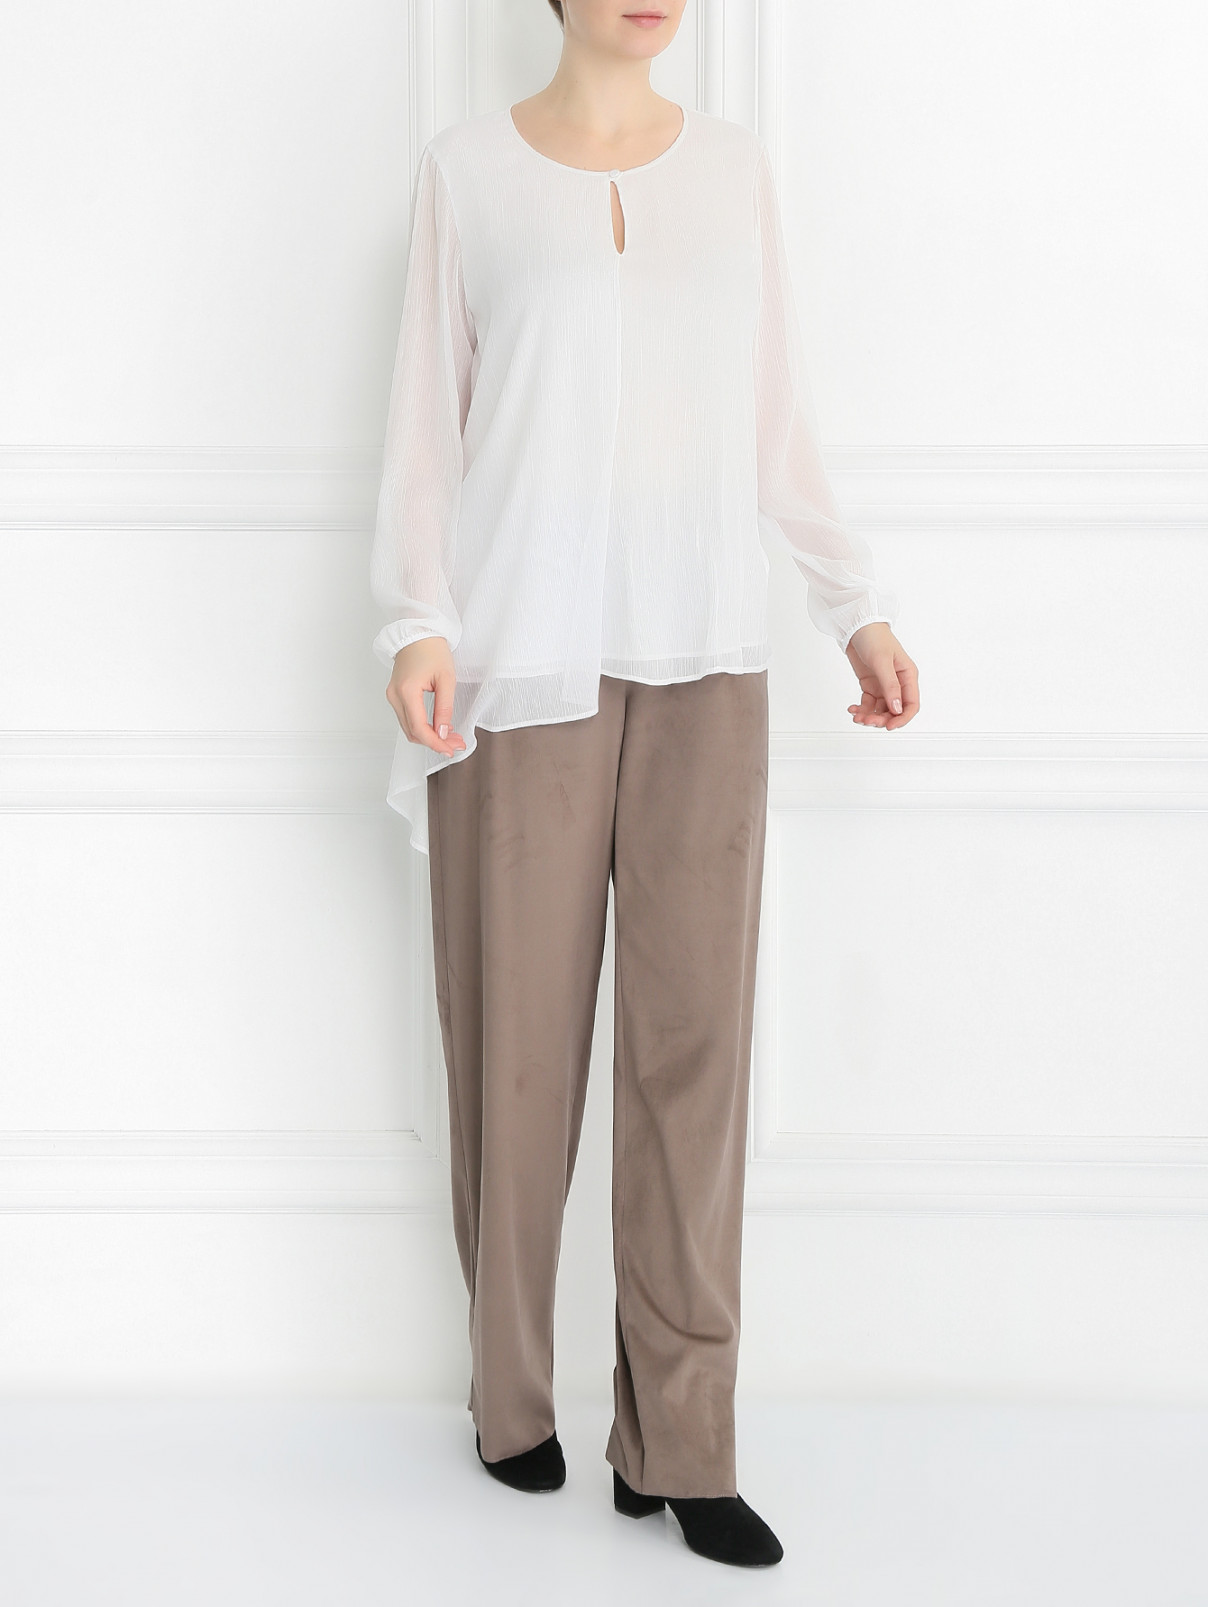 Блуза с длинным рукавом Persona by Marina Rinaldi  –  Модель Общий вид  – Цвет:  Белый